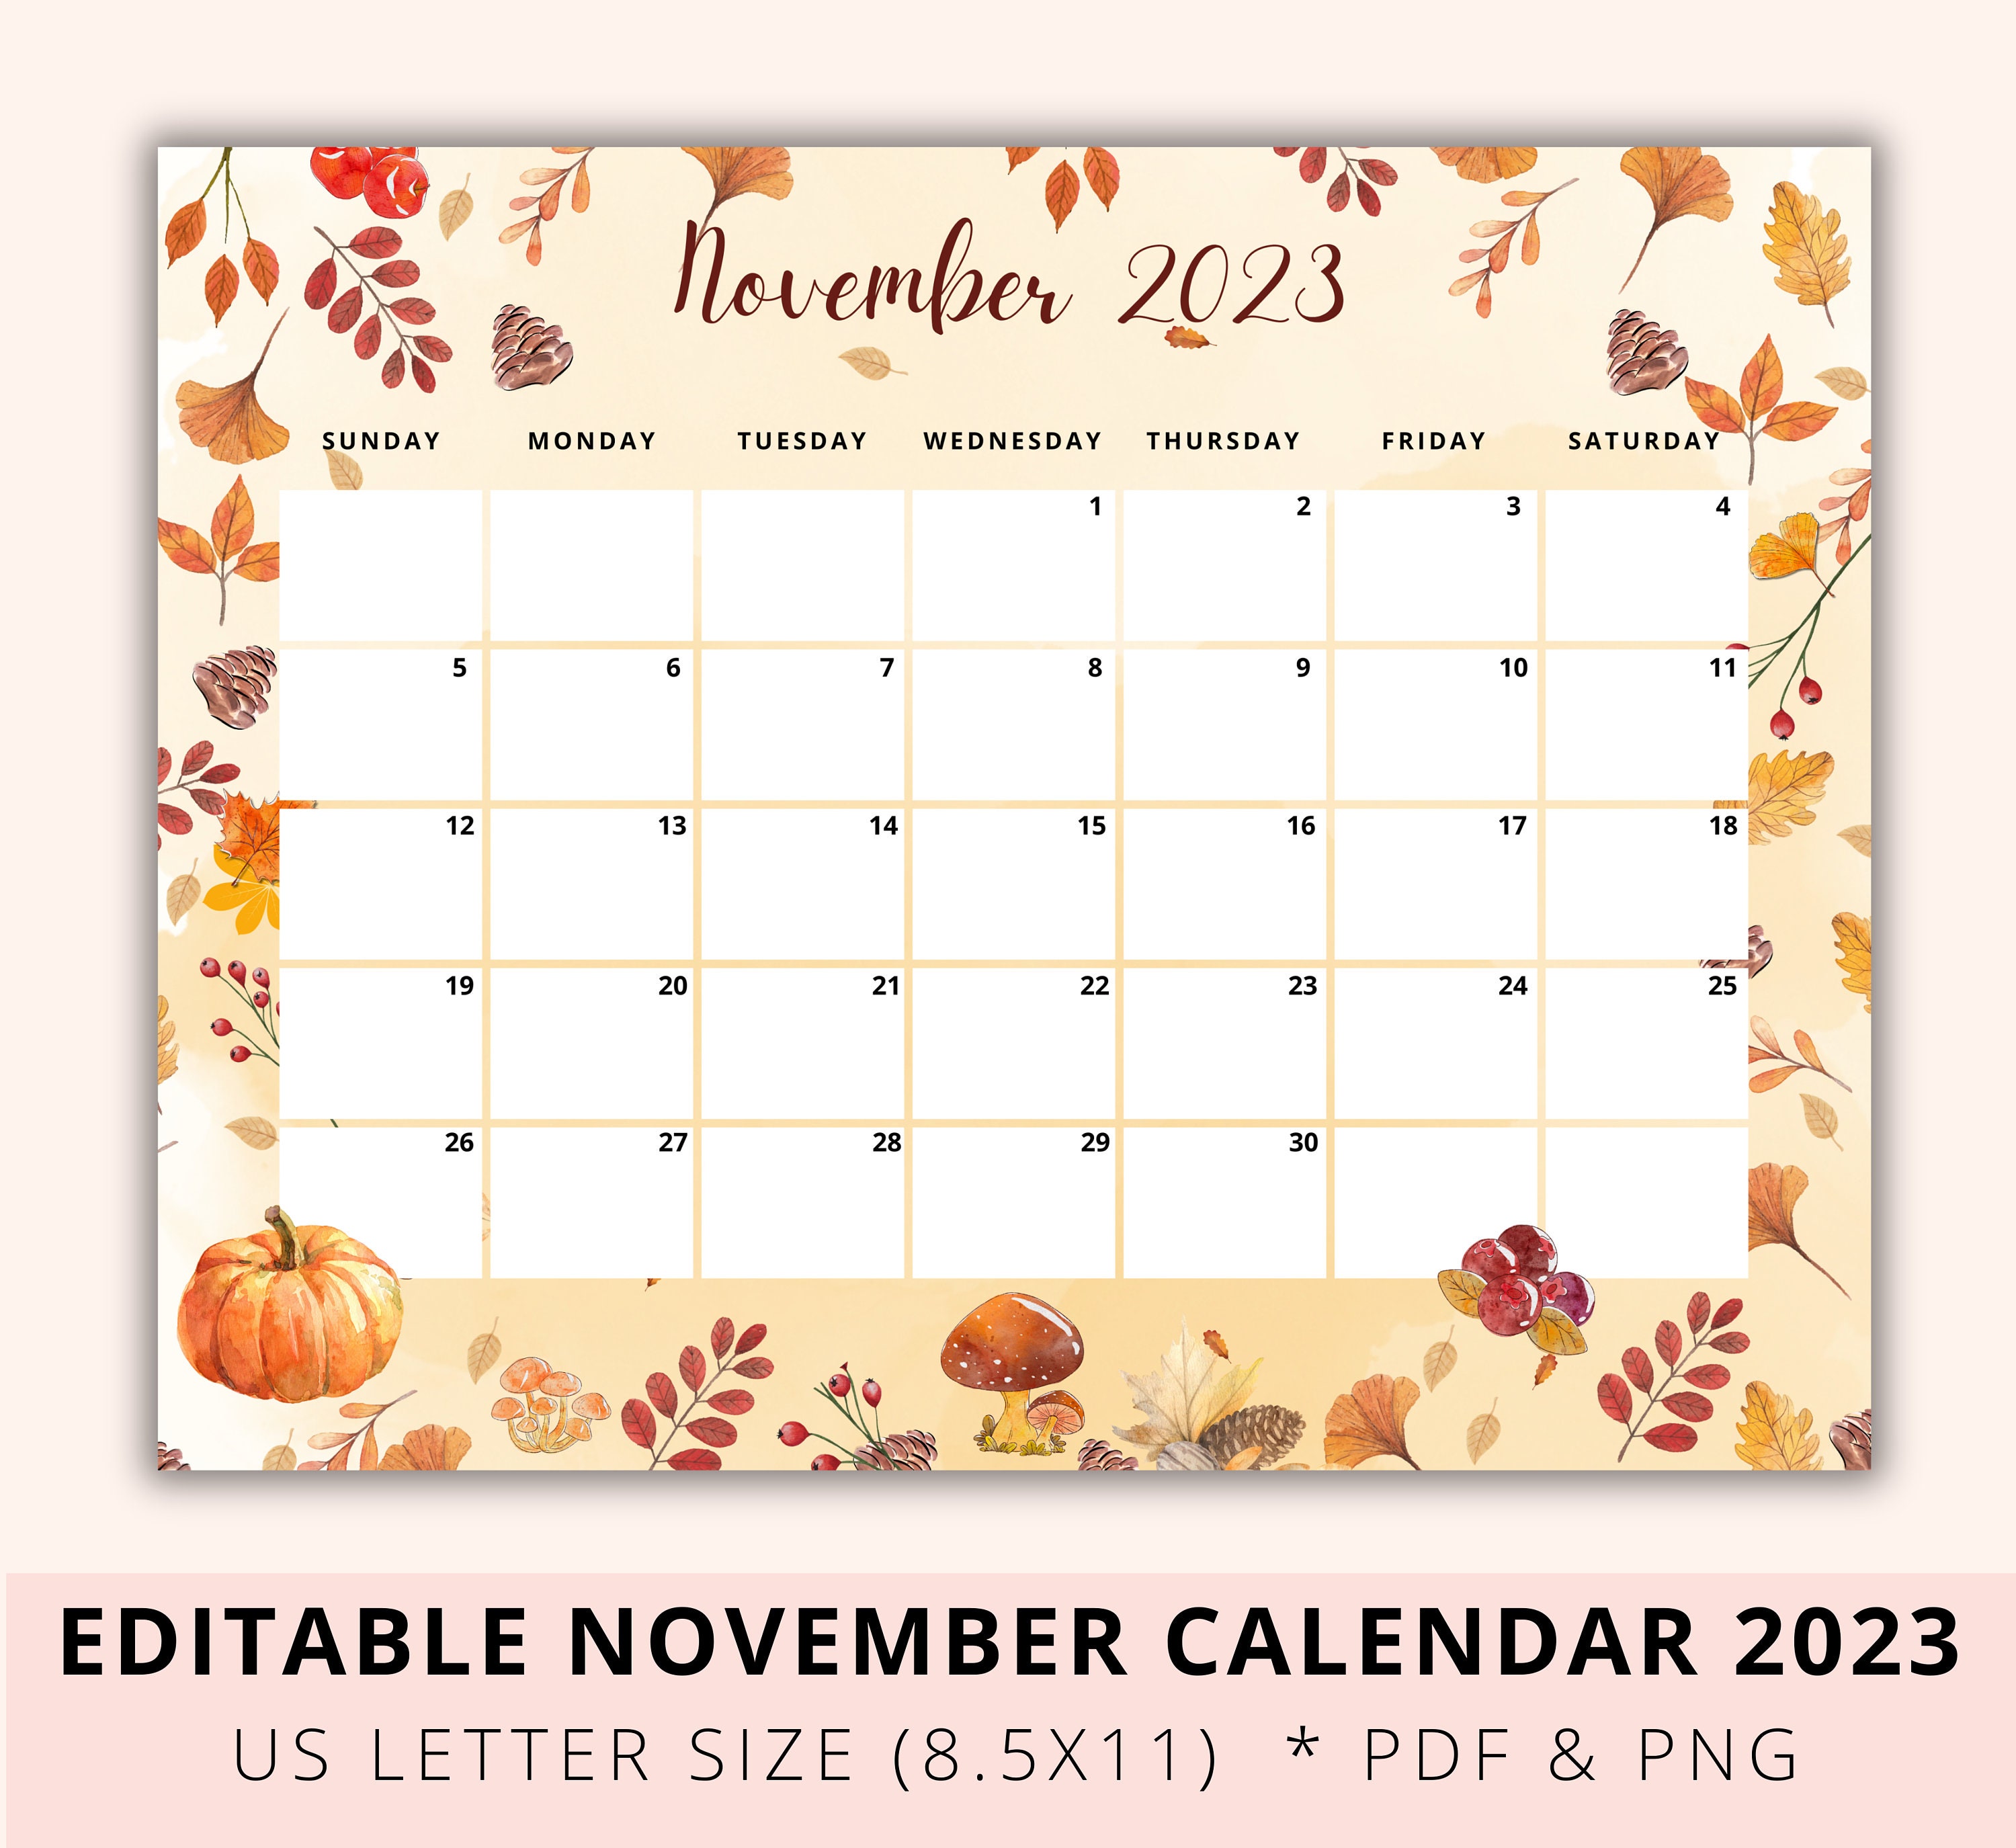 Thanksgiving Day 2023 - Calendar Date